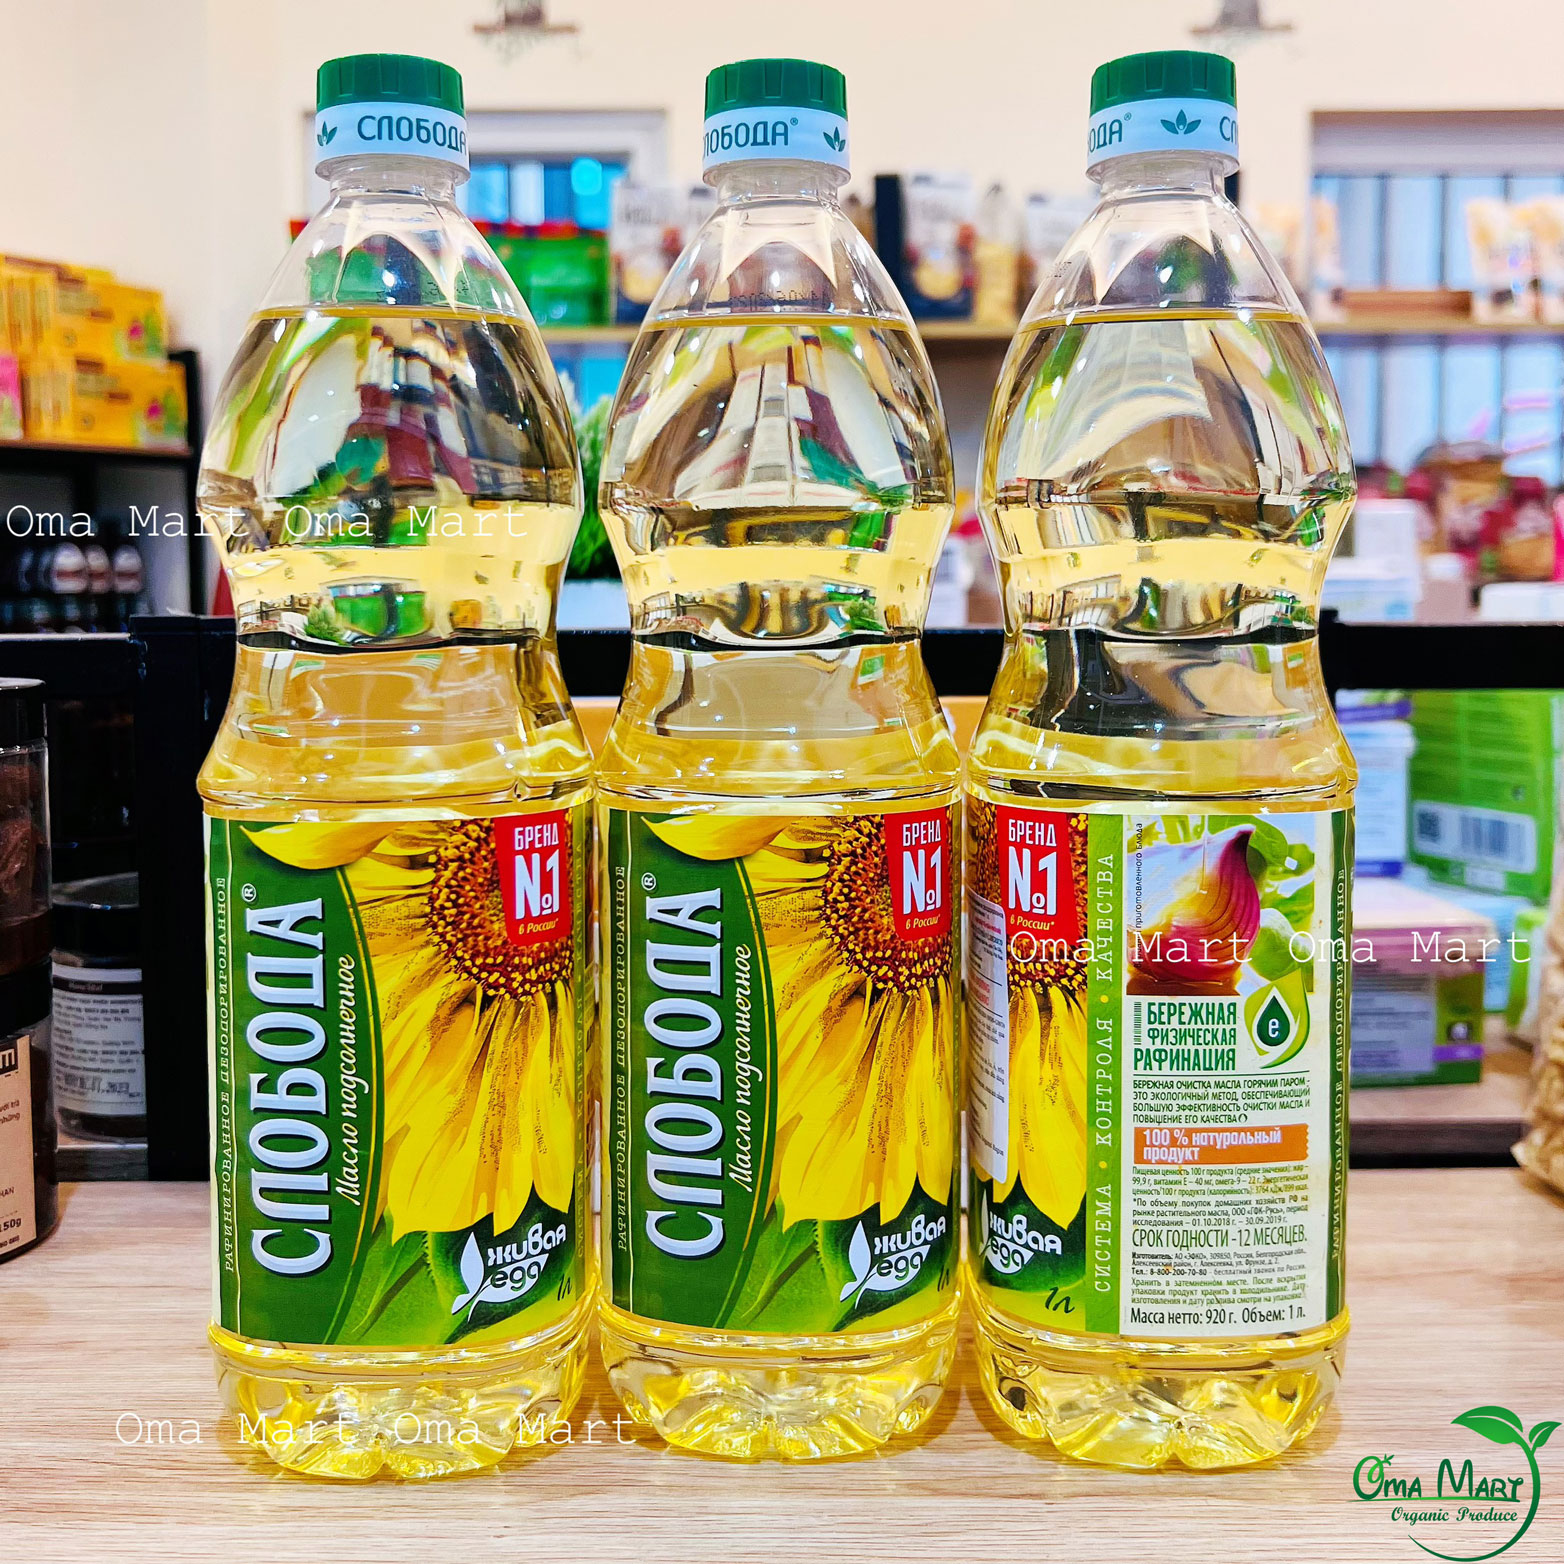 Non GMOs Sloboda 1 liter-Russia sunflower cooking oil